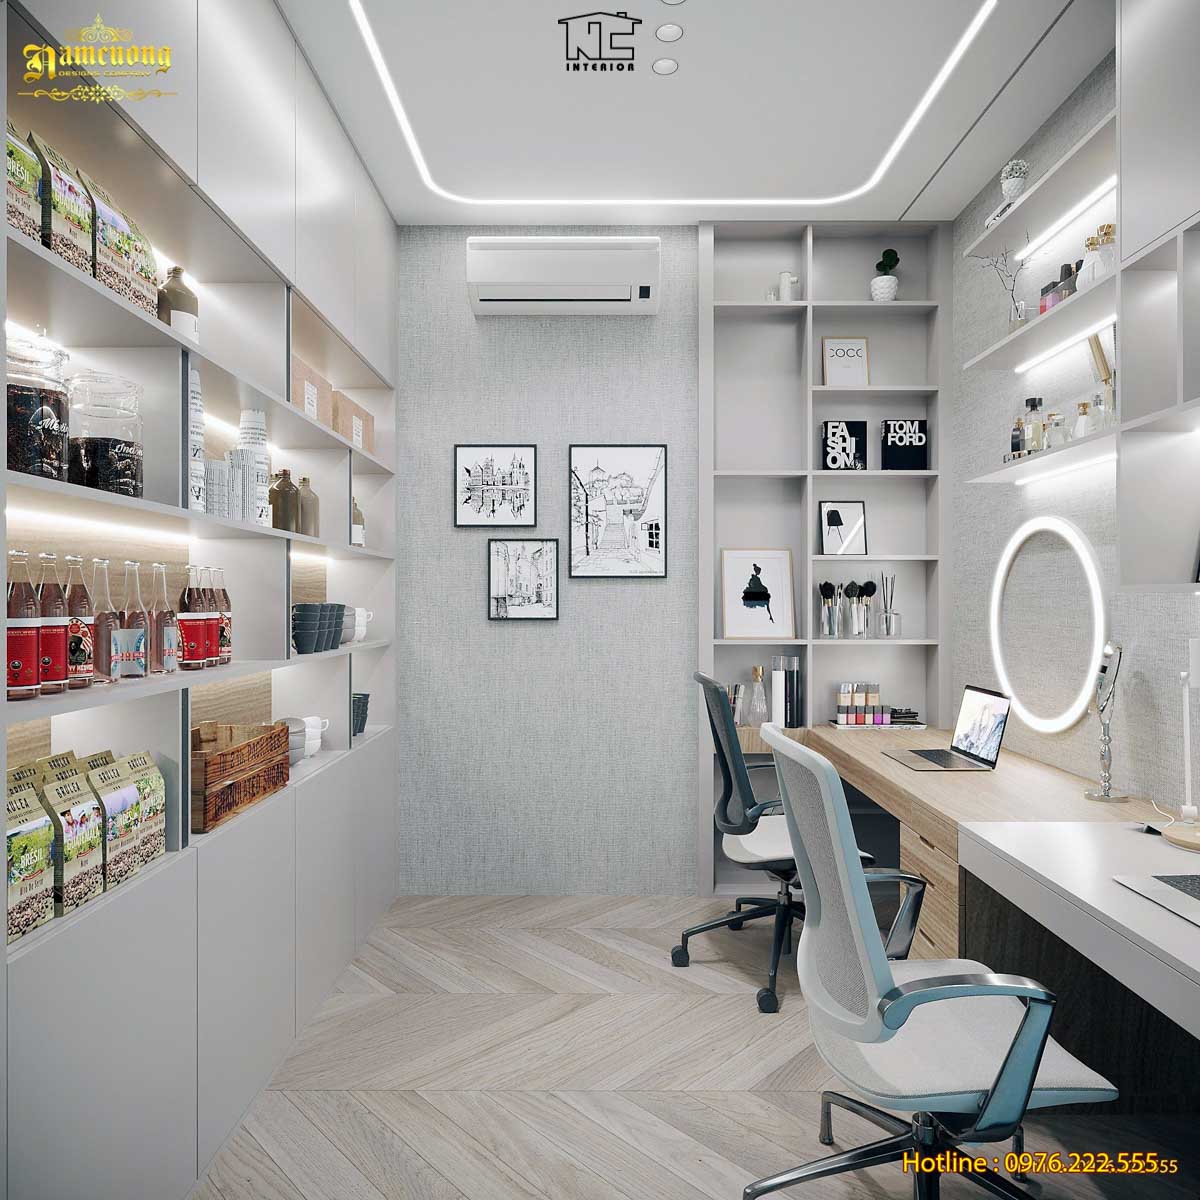 Không gian phòng làm việc nhỏ được thiết kế và bố trí nội thất khoa học, hợp lý, đảm bảo tiện nghi sử dụng